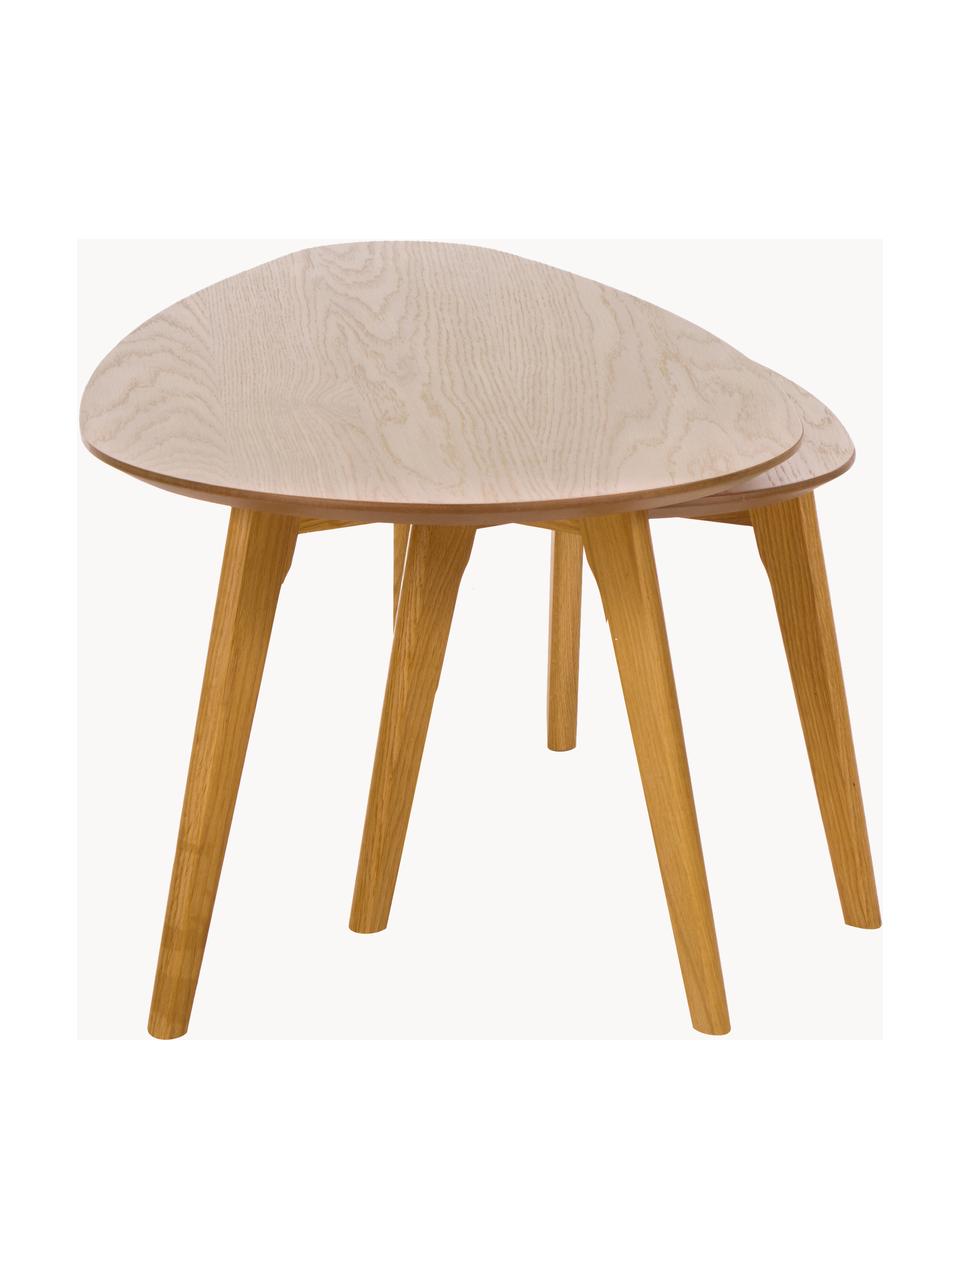 Komplet stolików kawowych z drewna Bloom, 2 elem., Nogi: drewno dębowe, Drewno naturalne, Komplet z różnymi rozmiarami